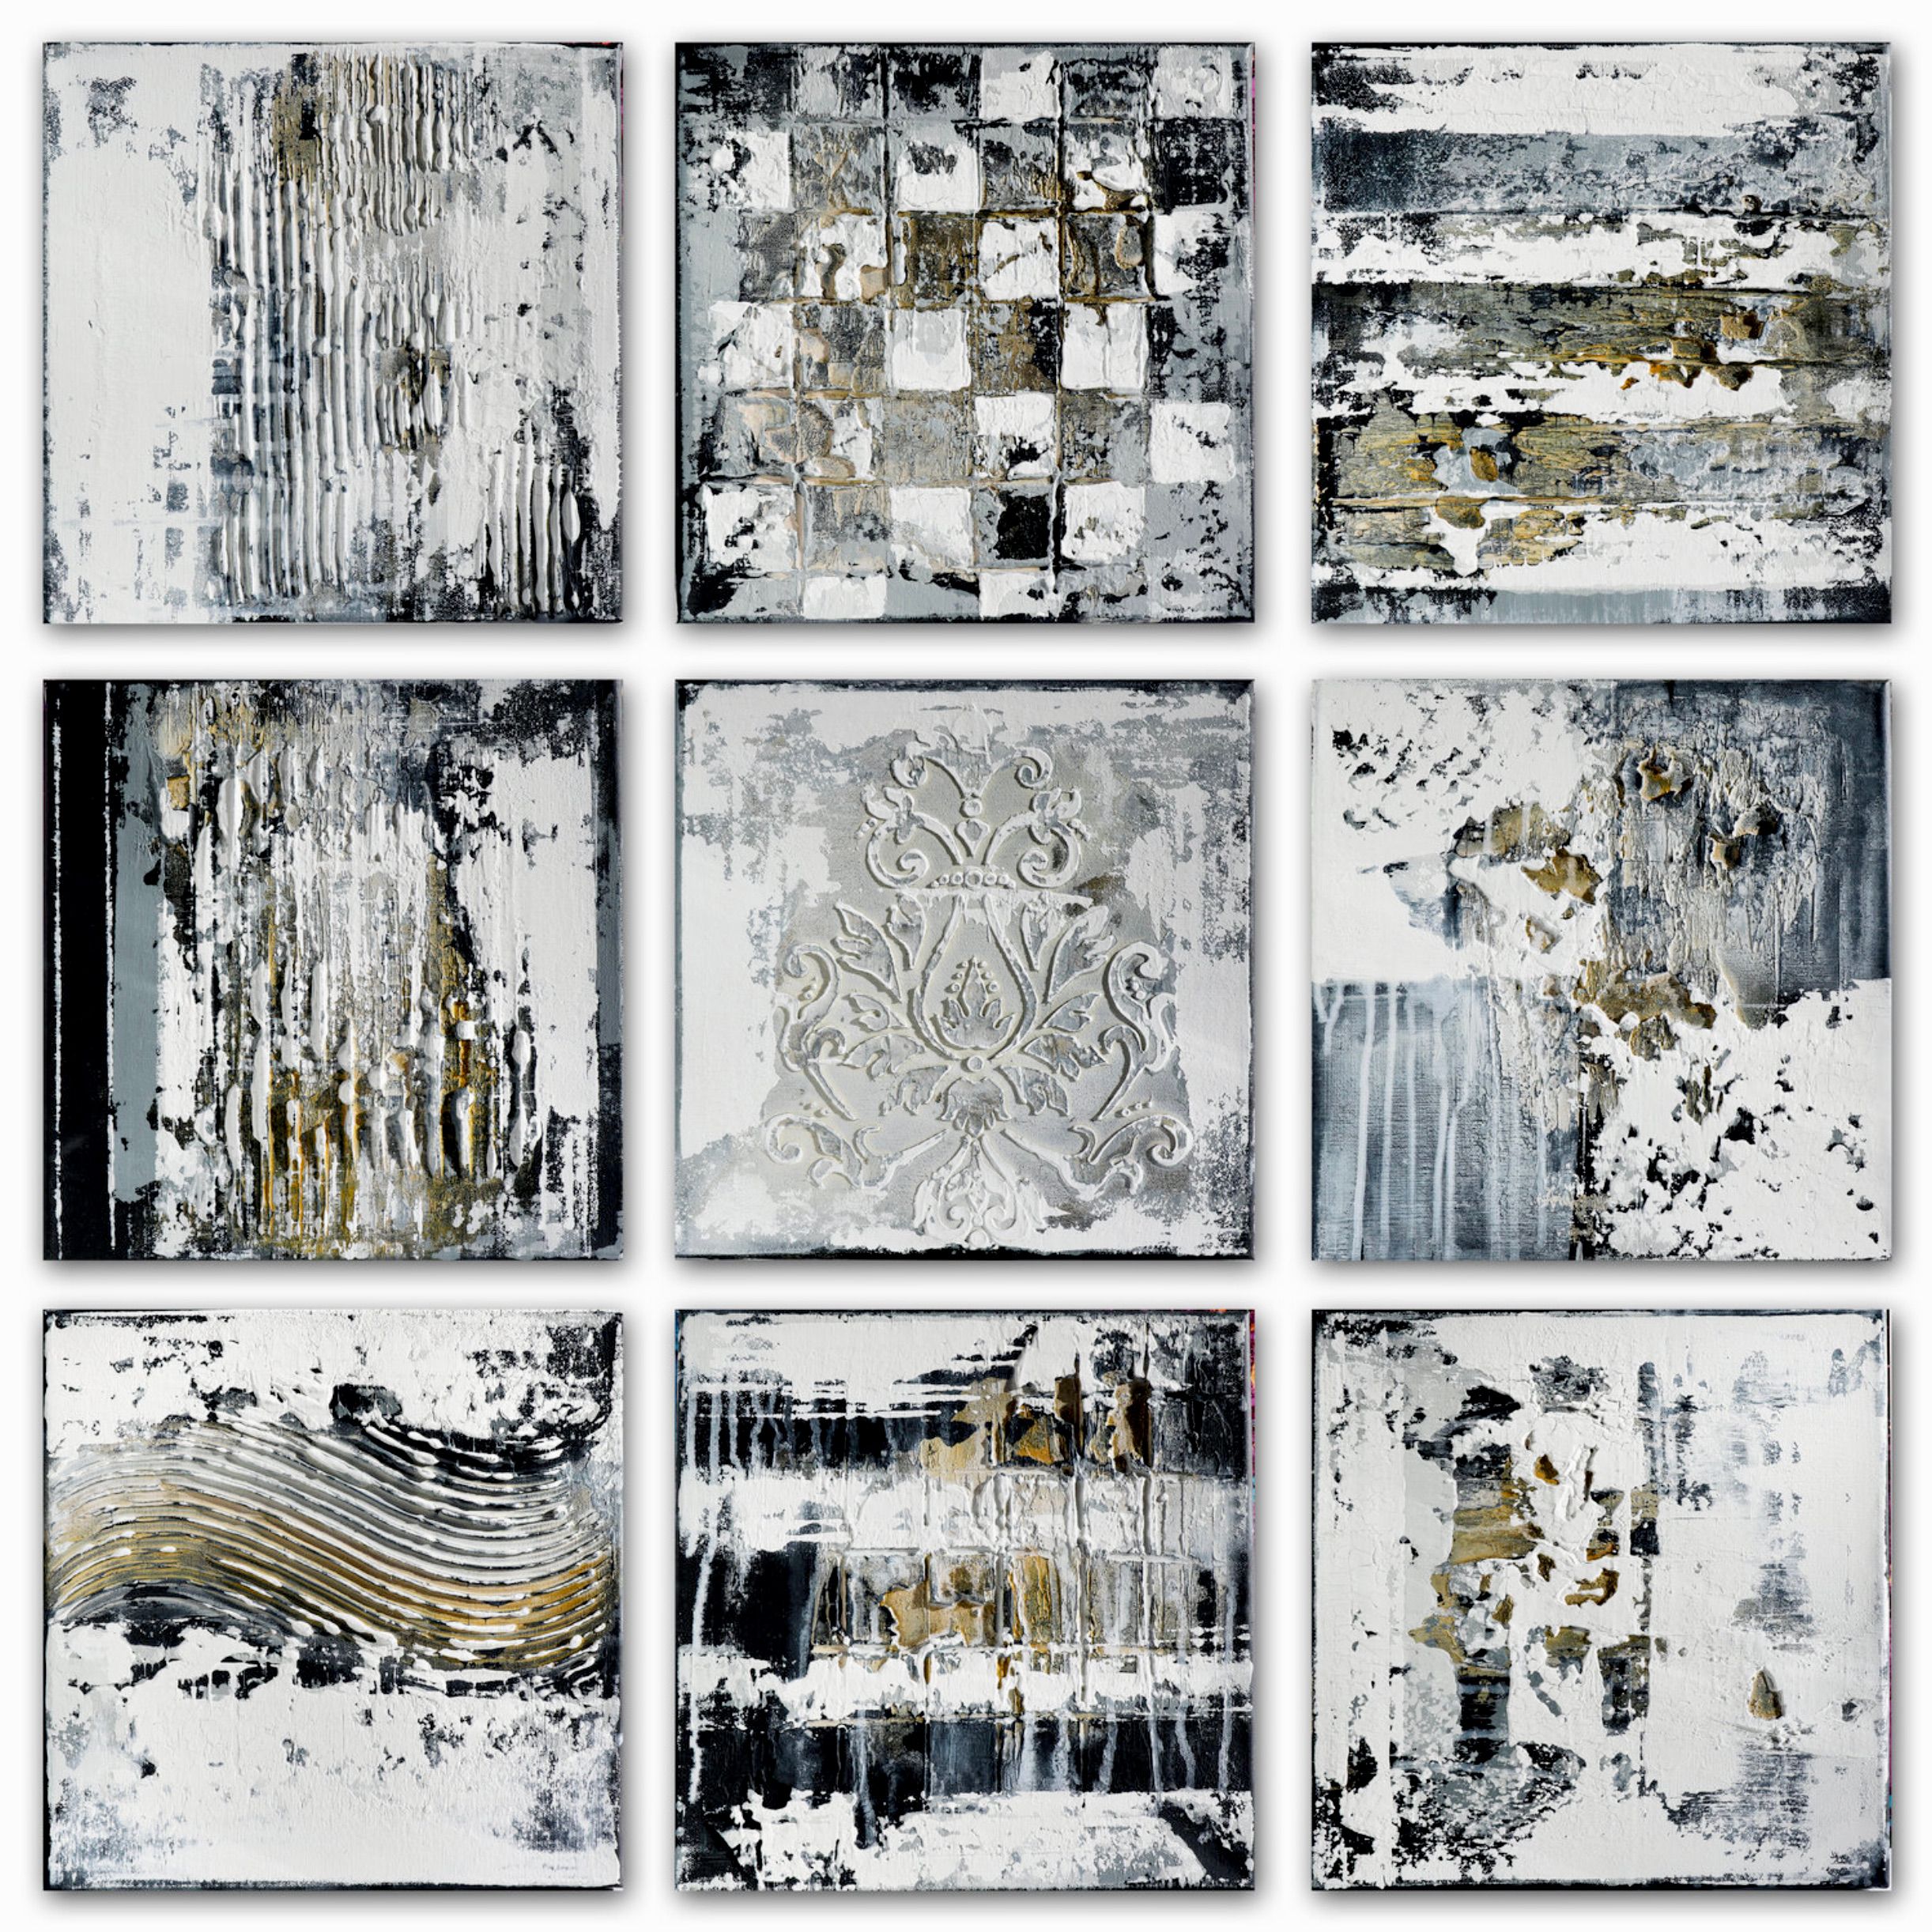 En "ARTEFACTS II" de Inez Froehlich, la pintura expresionista y abstracta consta de 9 partes de 30 x 30 cm. Predominan los colores naturales, los tonos pastel, el negro, el blanco, el gris y el dorado.